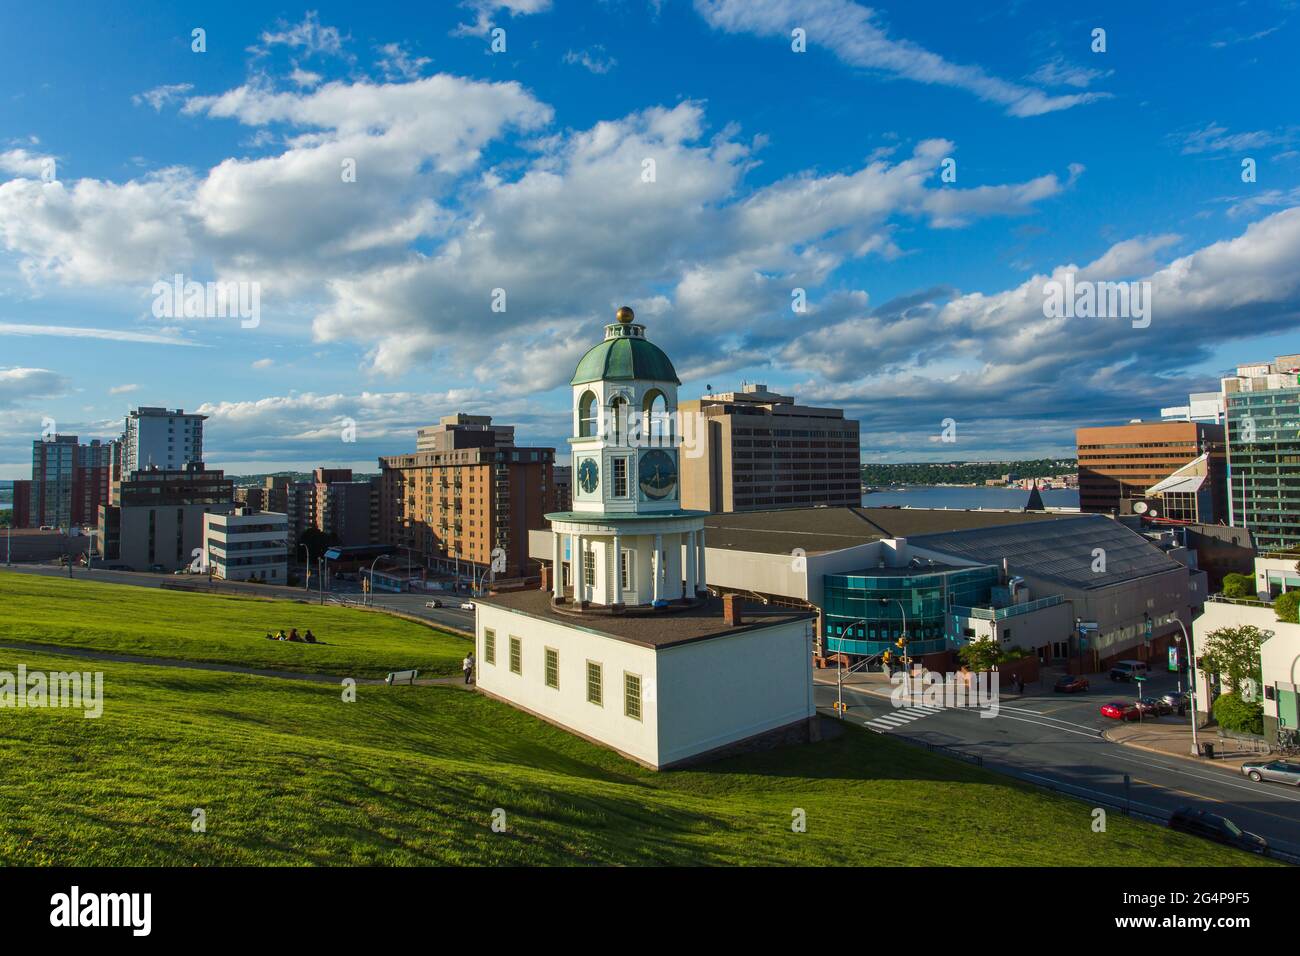 L'emblématique ville de 120 ans horloge Halifax, un monument historique de Halifax, Nouvelle-Écosse. Centre-ville de Halifax, vue depuis Citadel Hill surplombant le T. Banque D'Images